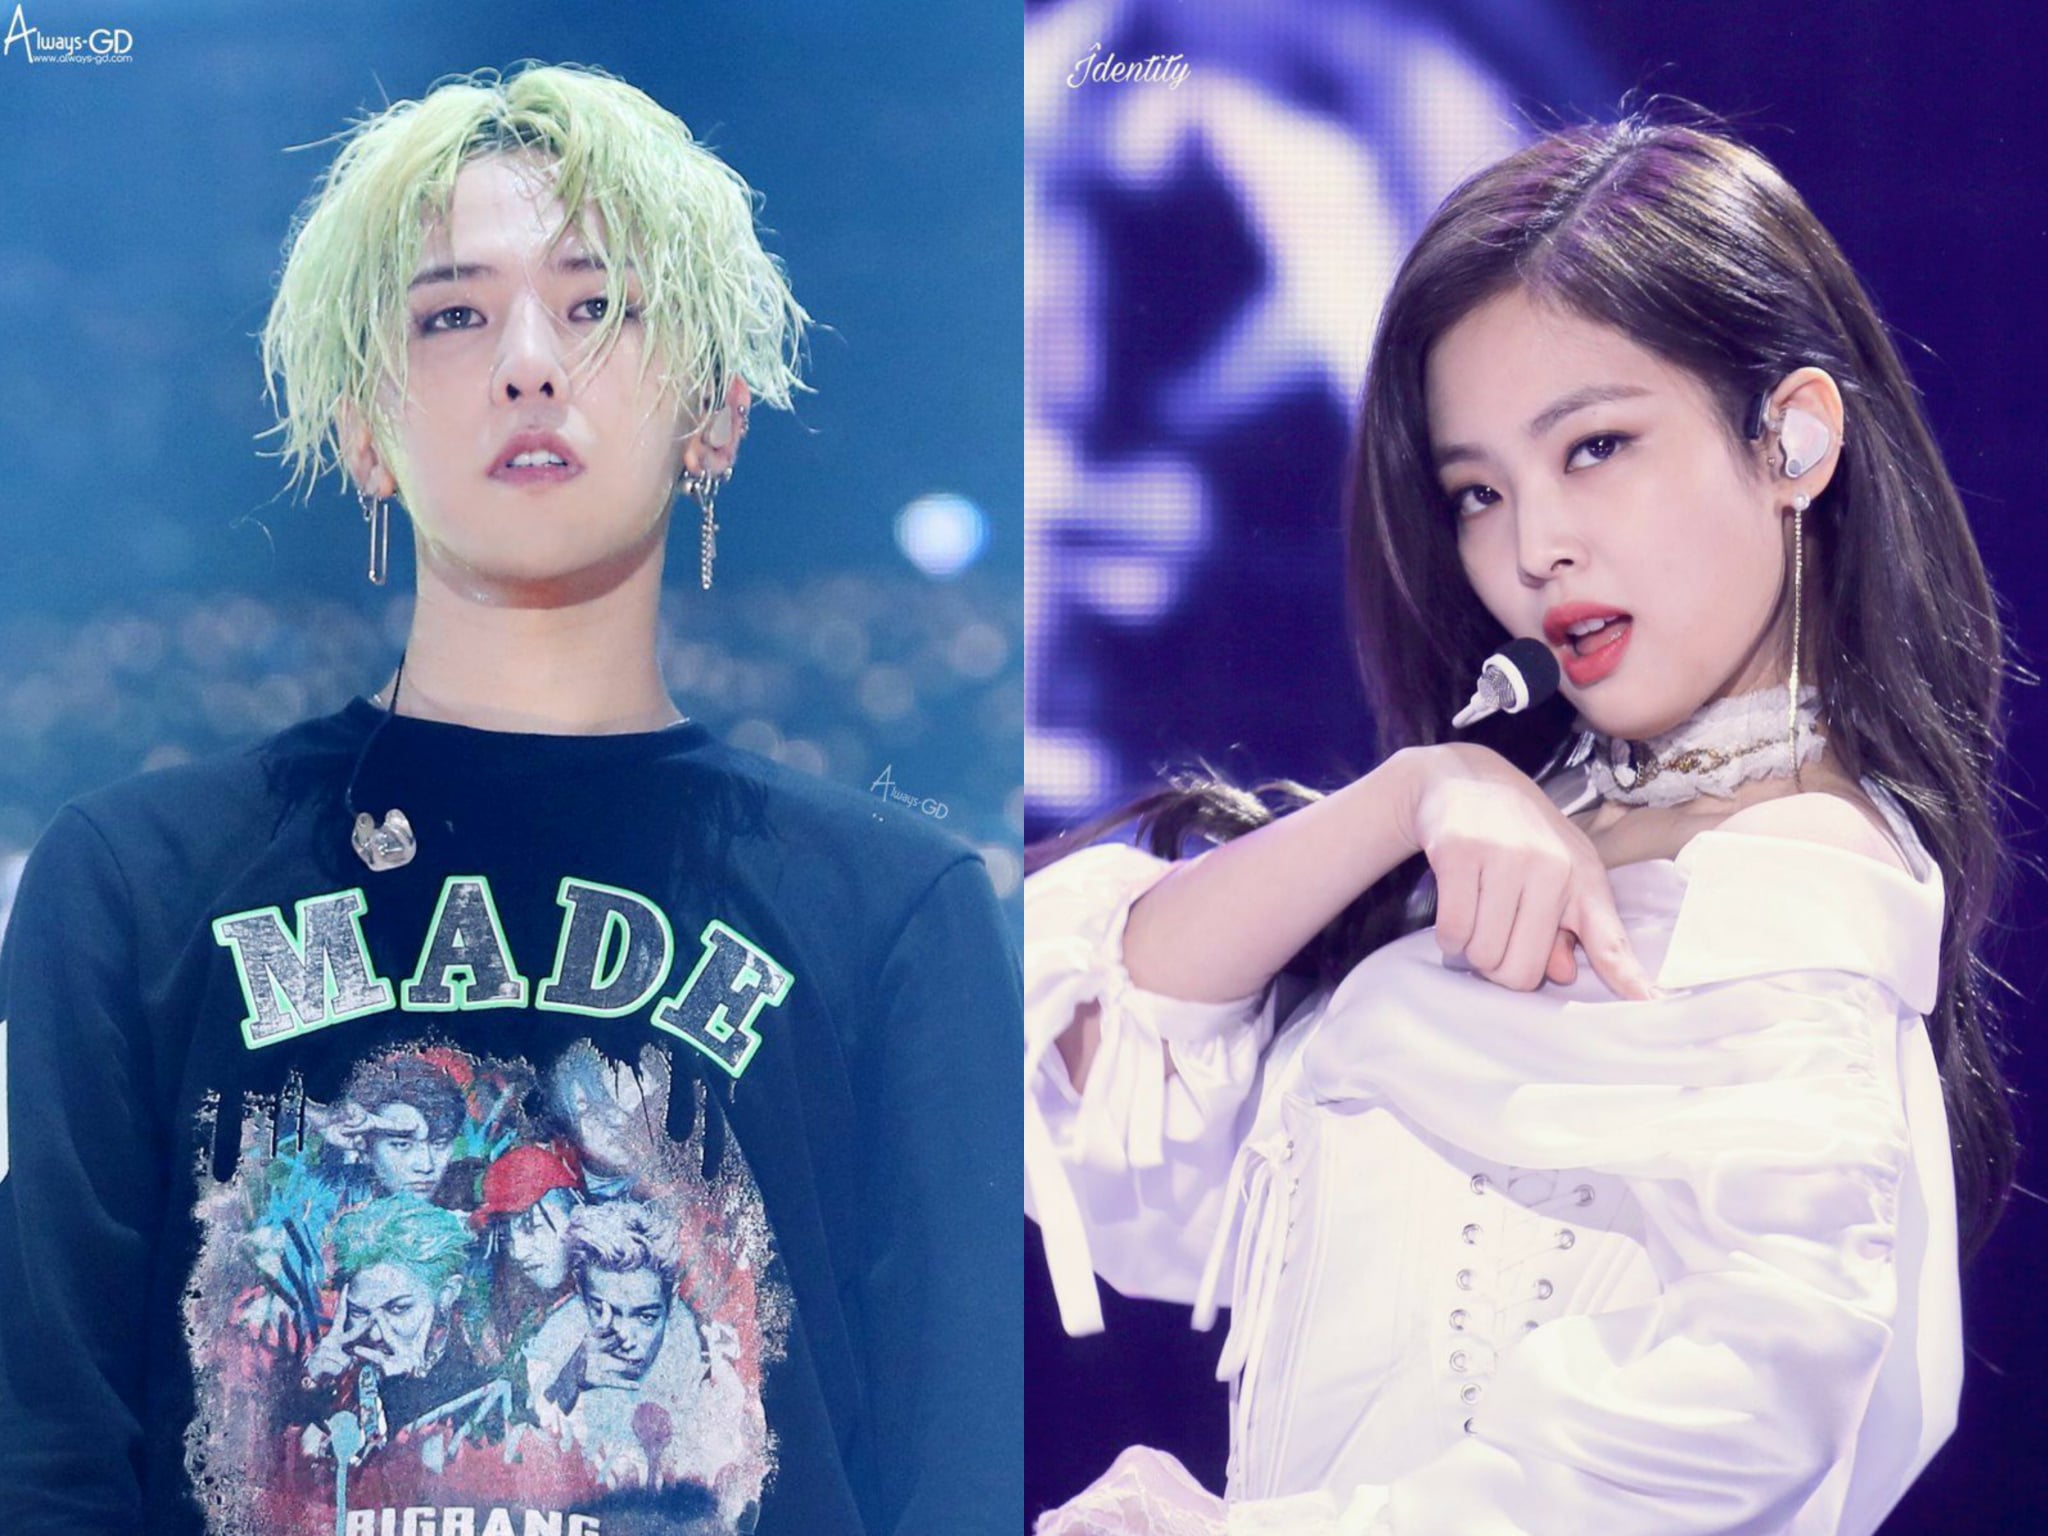 So kè nhan sắc, tài sản, danh tiếng của G-Dragon và Jennie (BLACKPINK), nên đôi thì Kpop khó ai sánh nổi!